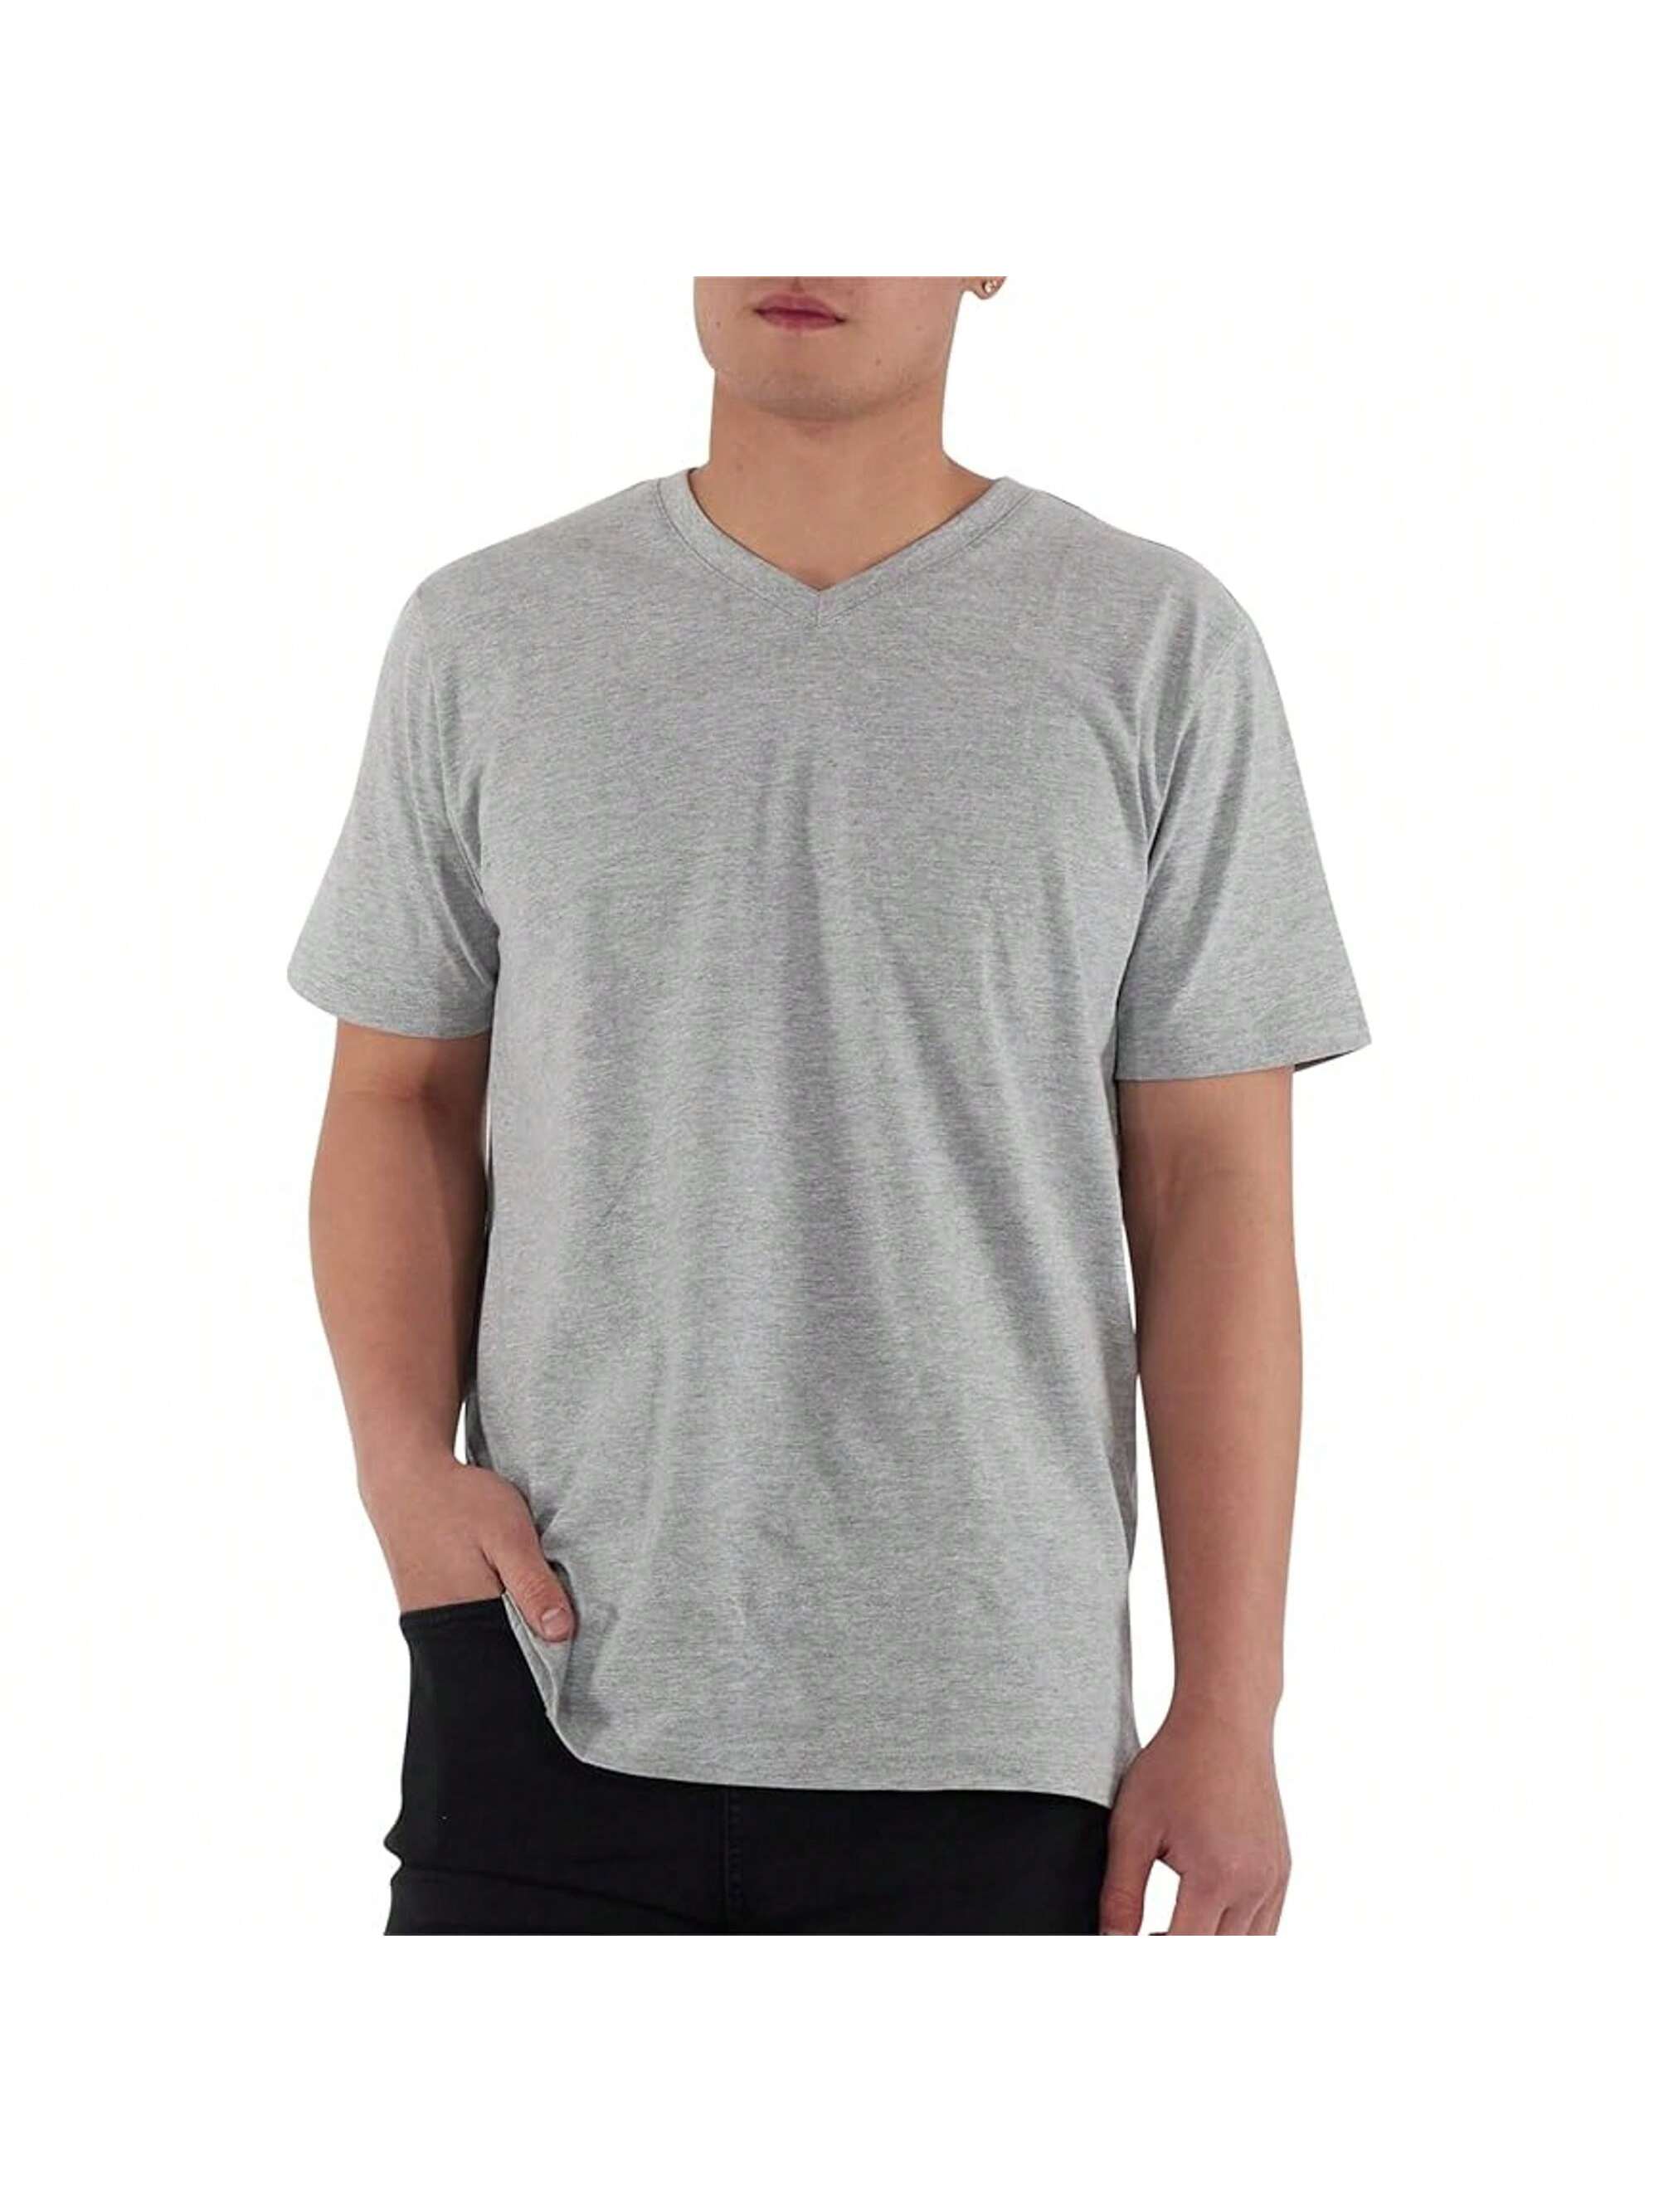 Мужская хлопковая футболка премиум-класса с v-образным вырезом Rich Cotton BLK-M, серый футболка мужская с v обр вырезом victory 150 темно синяя размер m